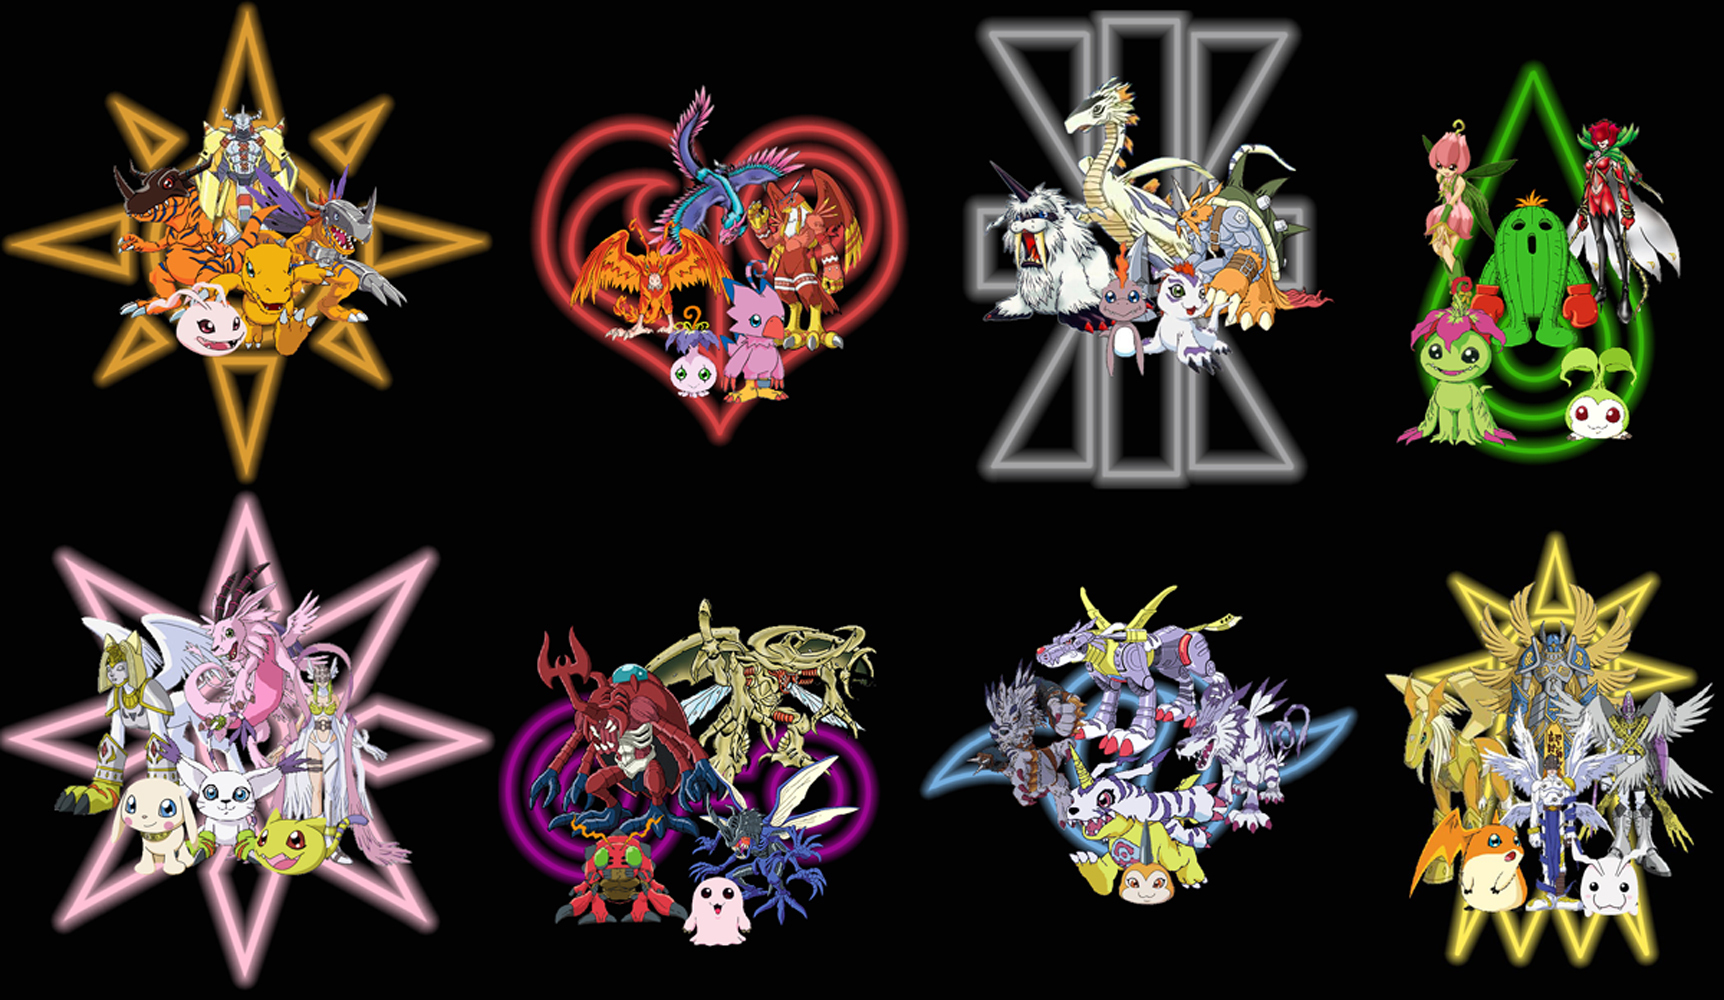 15 Quality Digimon Wallpapers, Anime & Manga